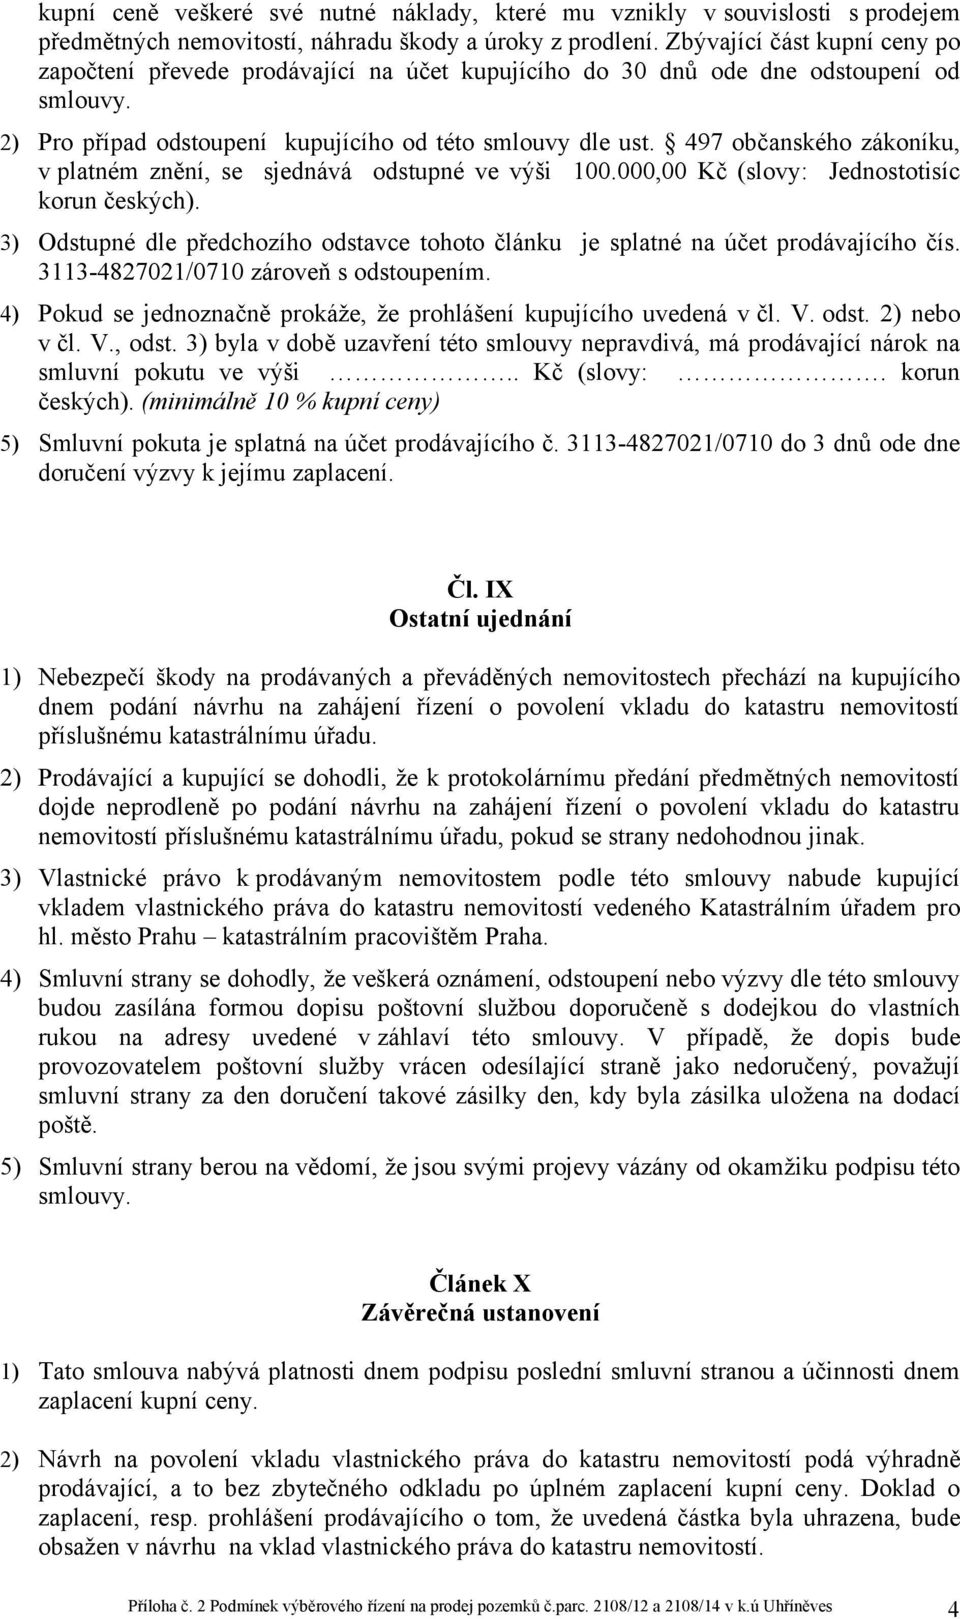 497 občanského zákoníku, v platném znění, se sjednává odstupné ve výši 100.000,00 Kč (slovy: Jednostotisíc korun českých).